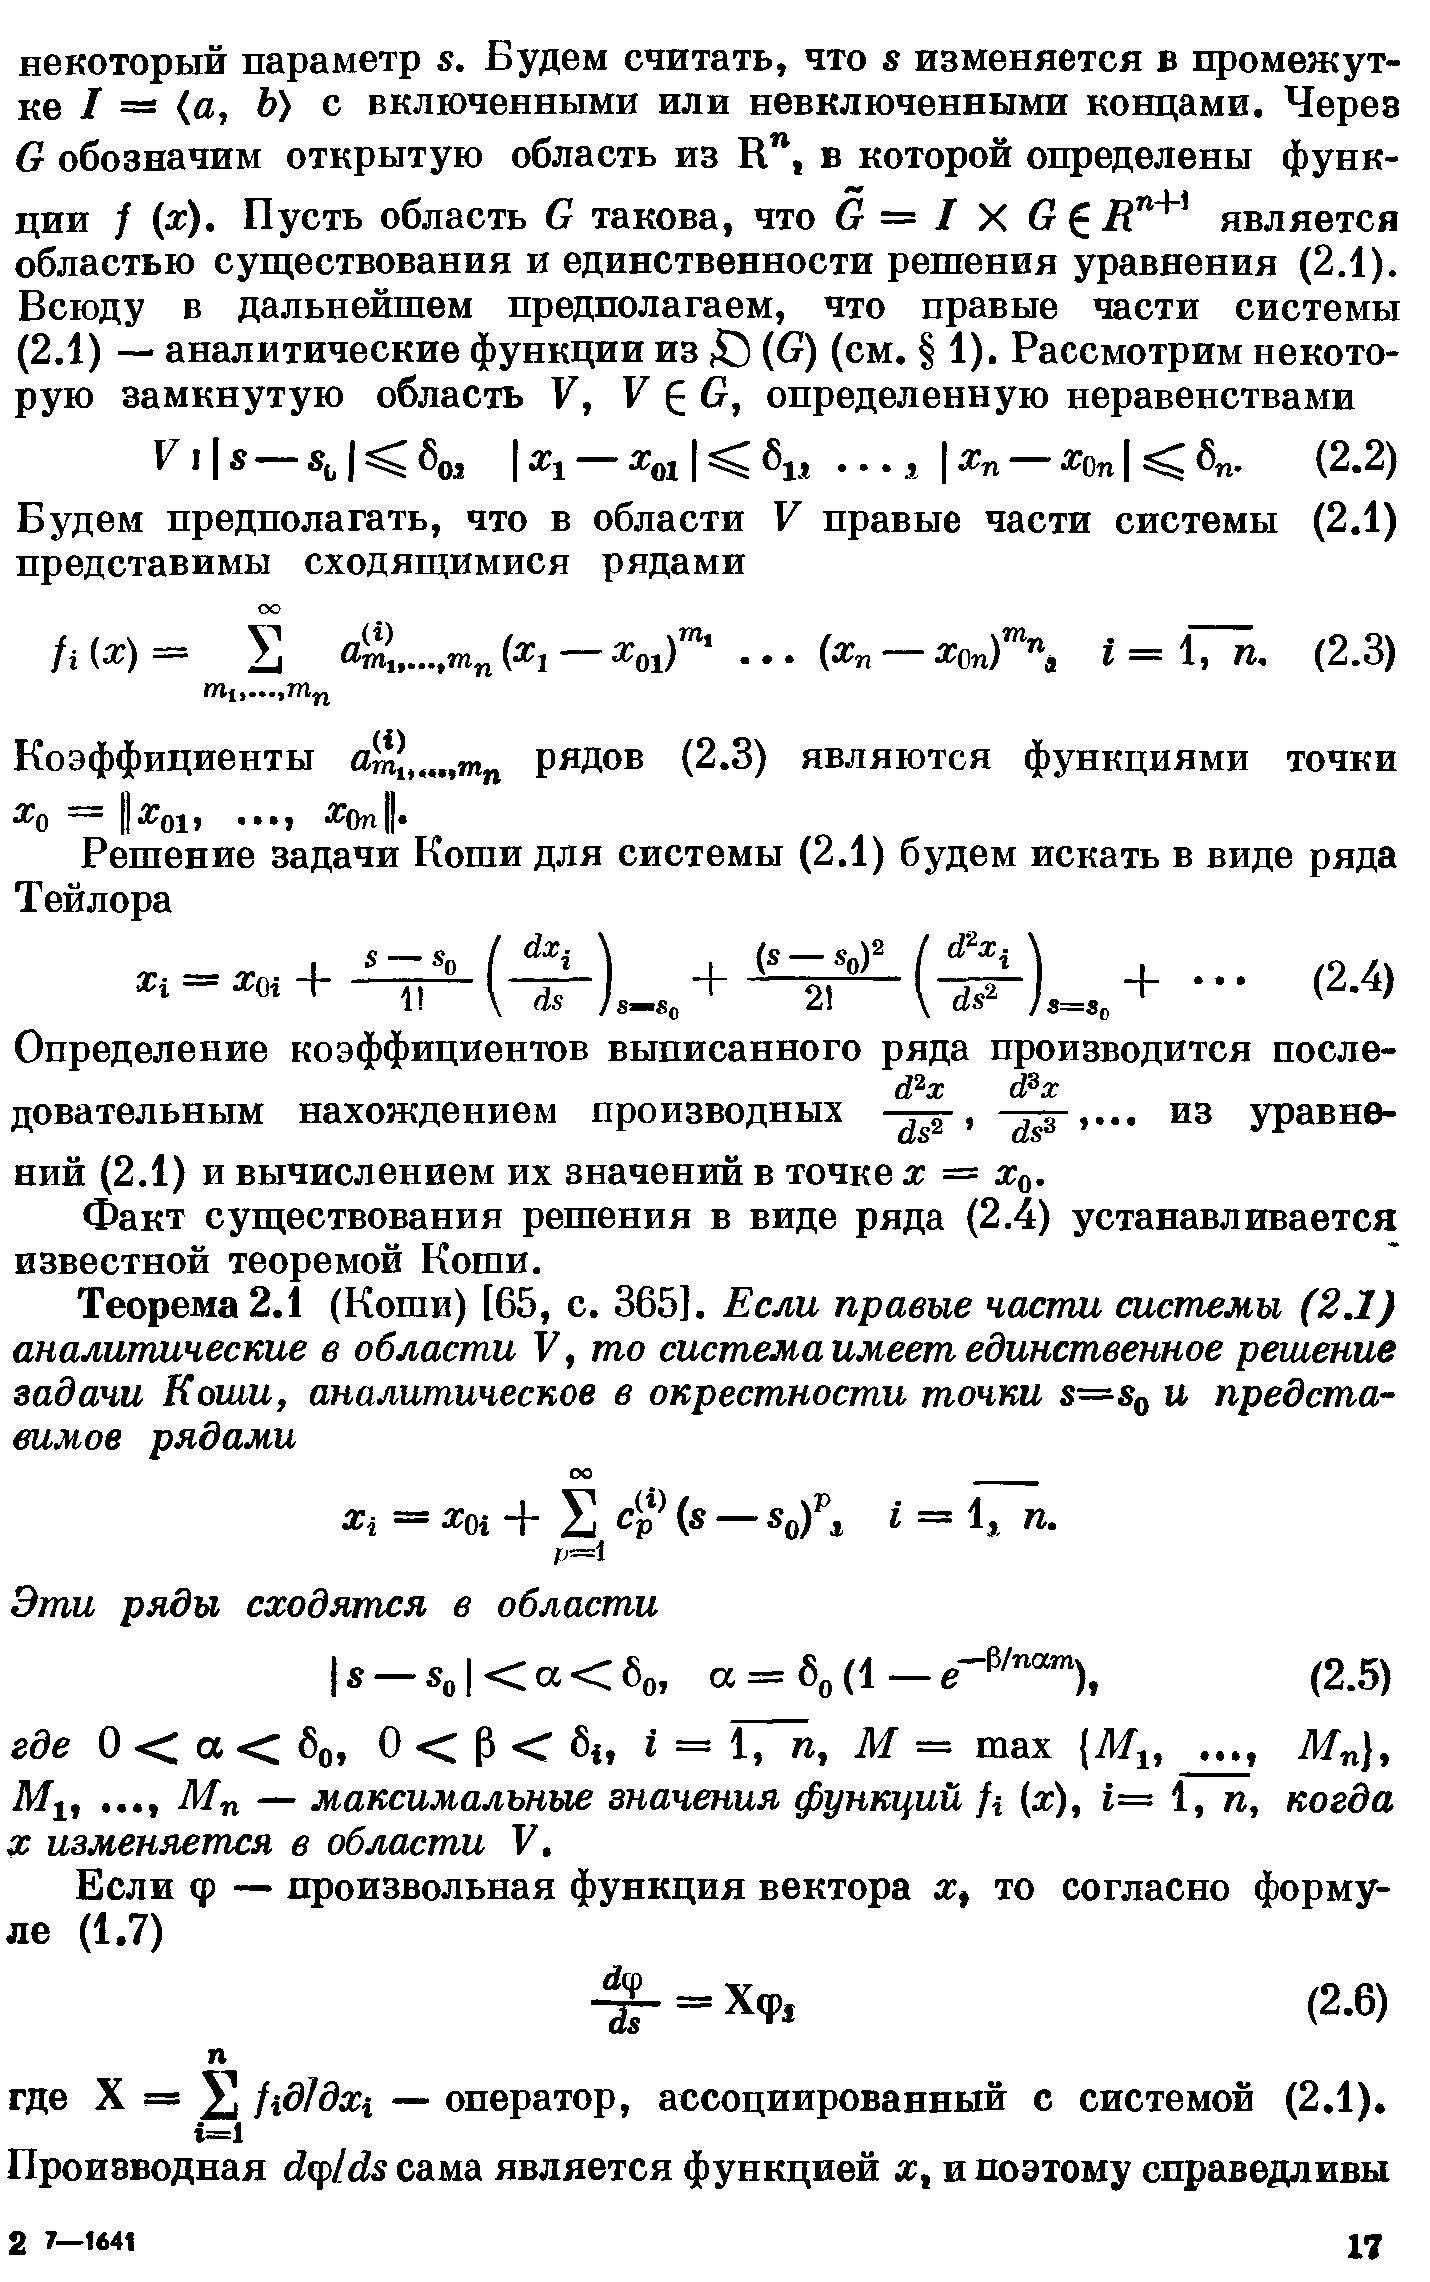 Факт существования решения в виде ряда (2.4) устанавливается известной теоремой Коши.
